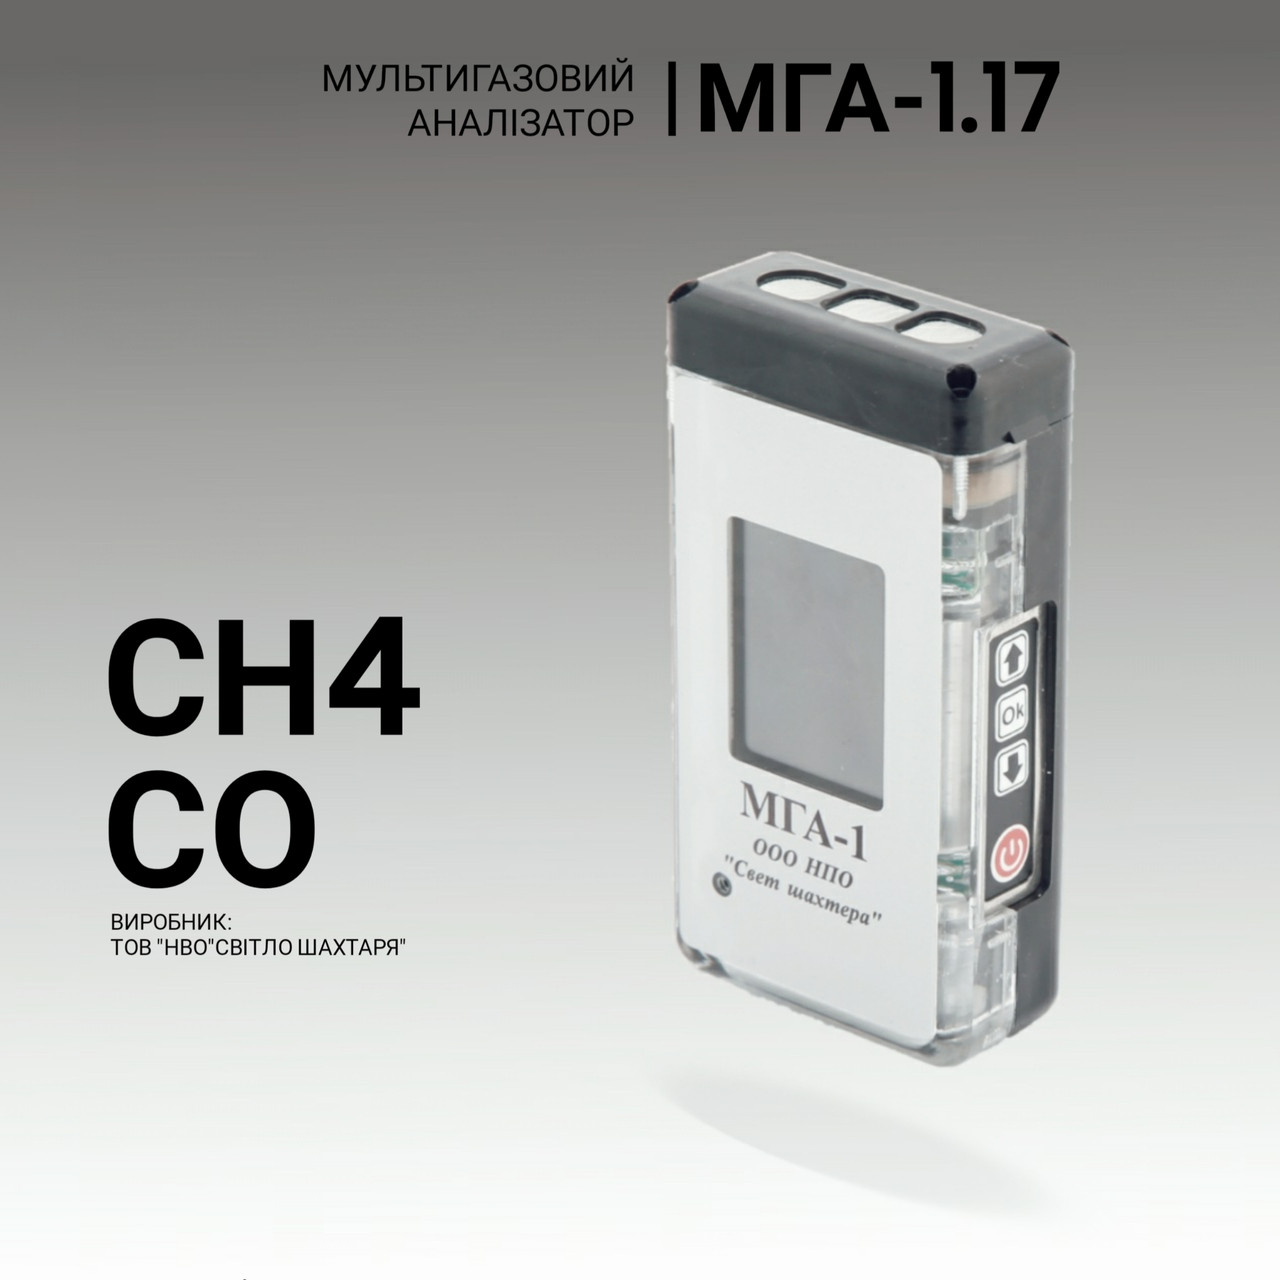 Мультигазовий аналізатор МГА-1.17 (СH4, CO). Аналізатор газовий. Промисловий газоаналізатор